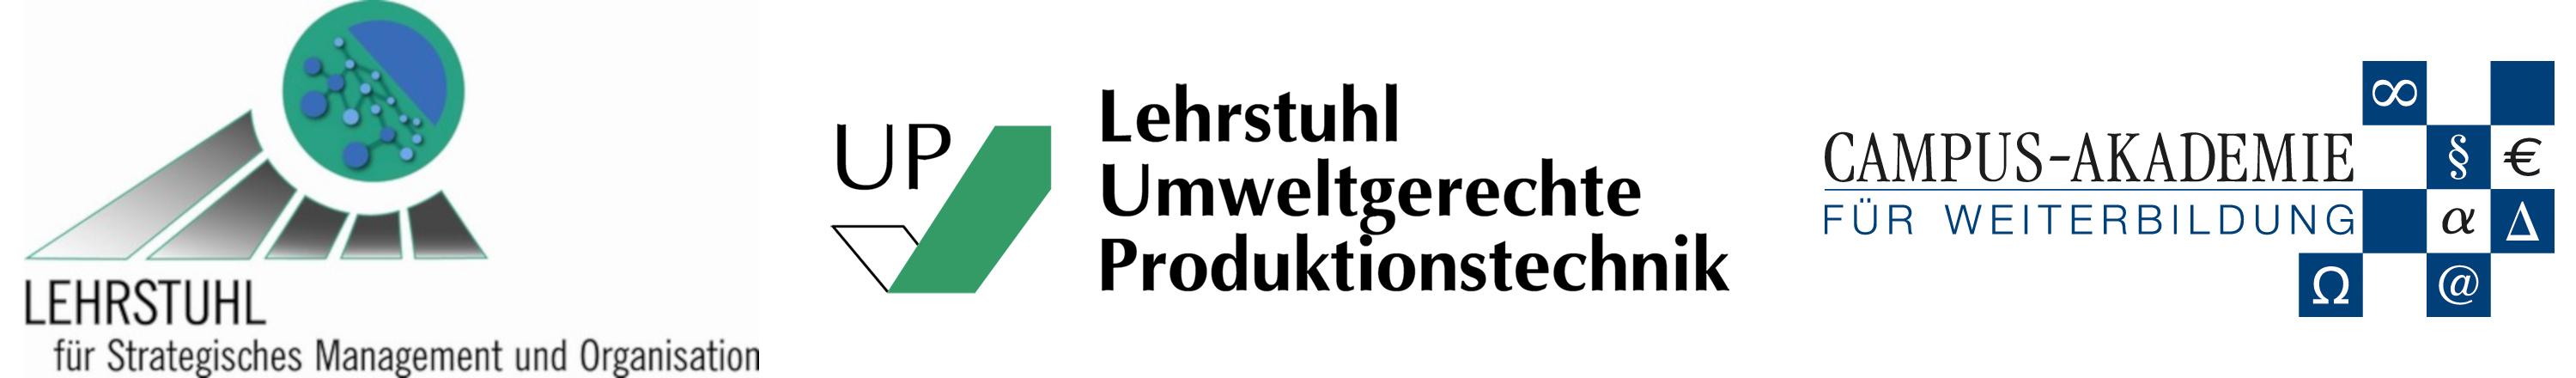 Logo Lehrstuhl für Strategisches Management und Organisation, Logo Lehrstuhl Umweltgerechte Produktionstechnik und Logo Campus Akademie Universität Bayreuth